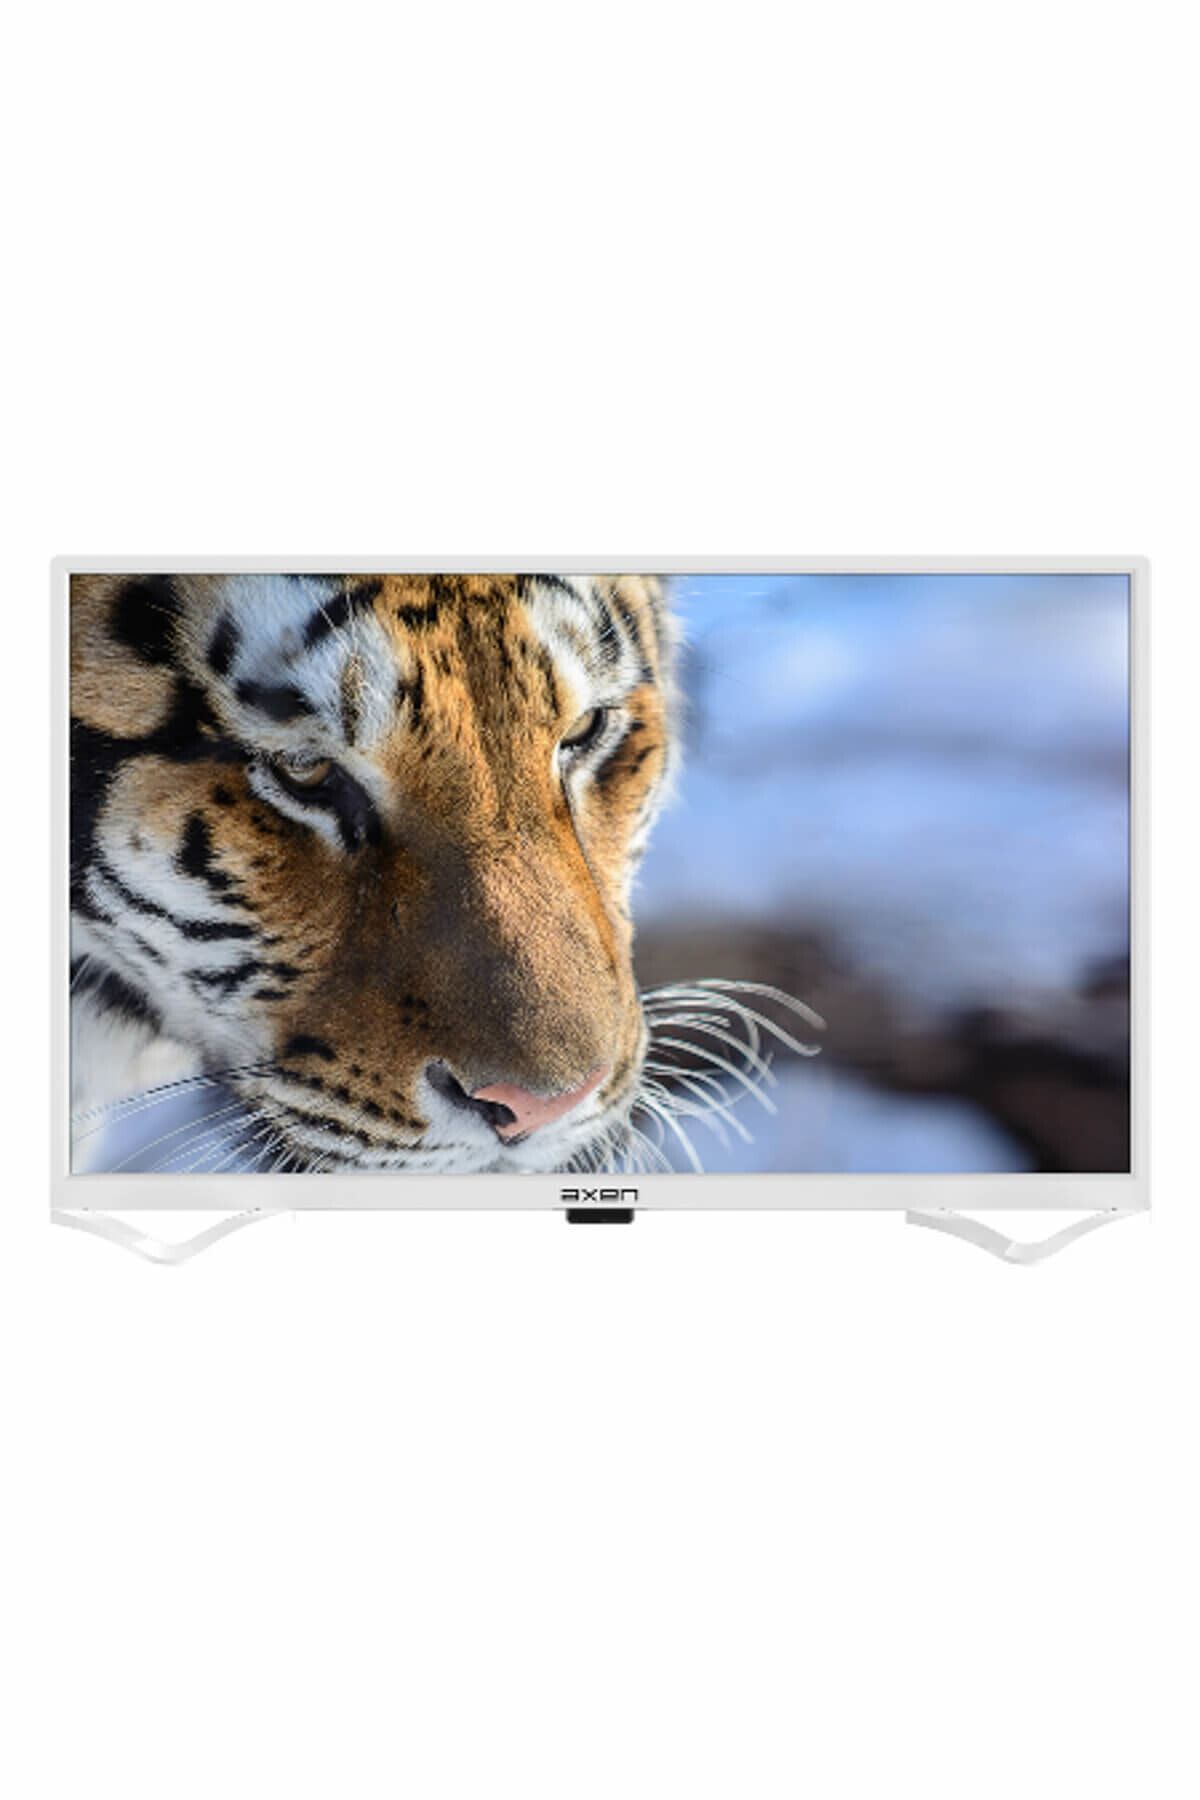 Axen AX32DAB04-B 32" 81 Ekran Uydu Alıcılı HD Ready LED TV